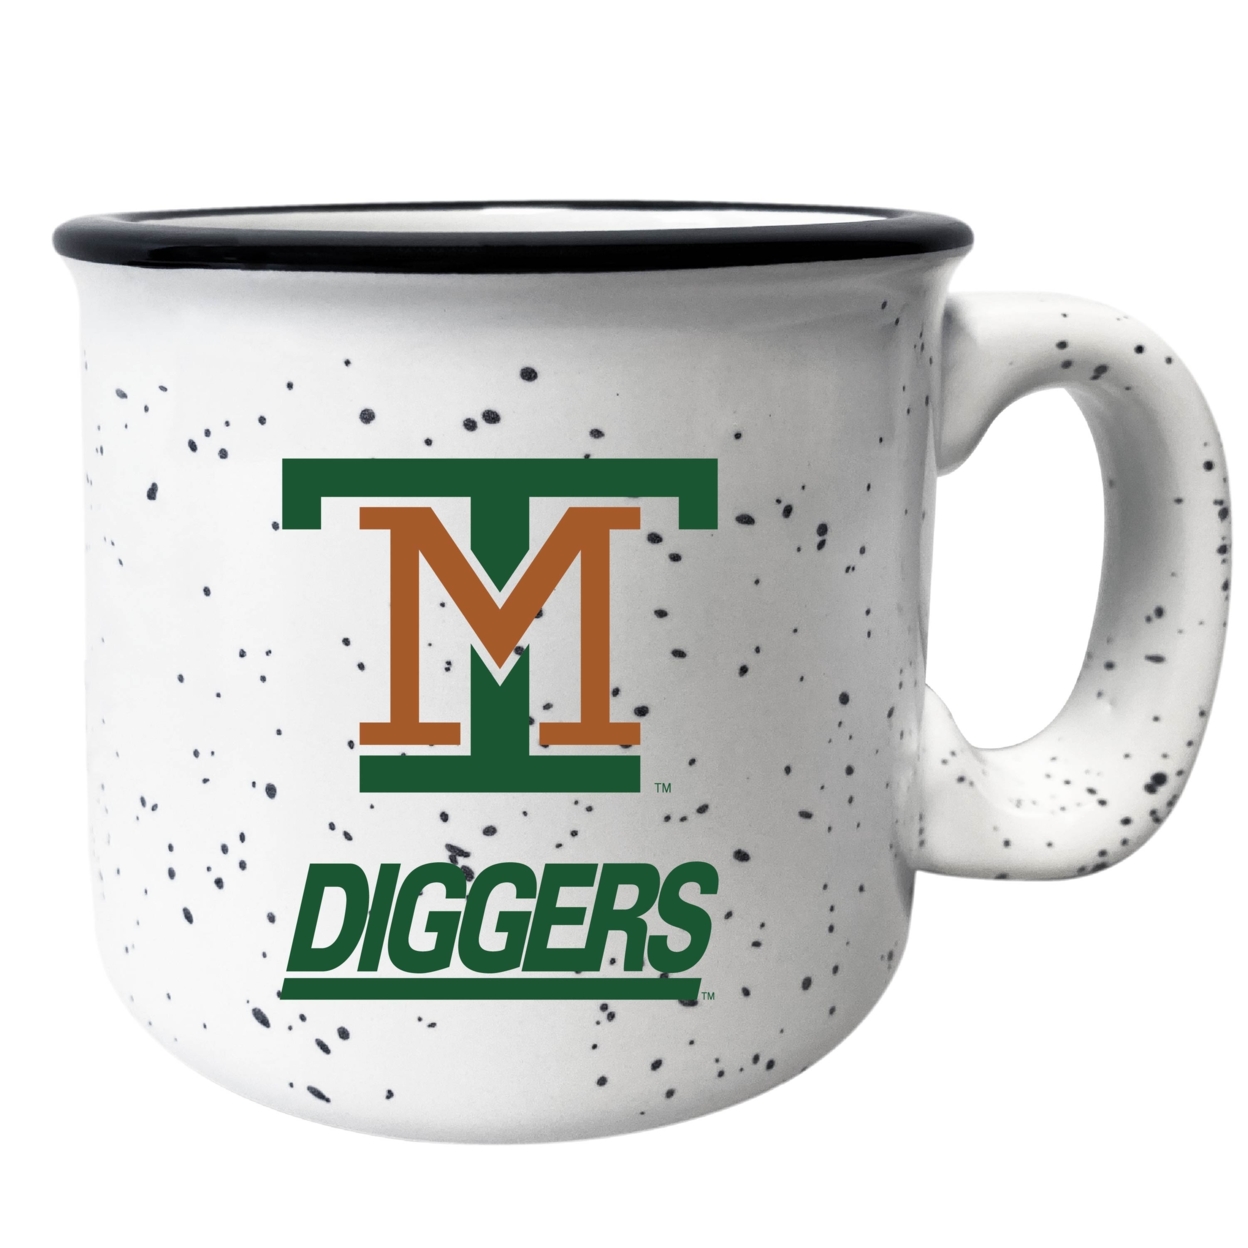 Montana Tech Speckled Ceramic Camper Coffee Mug - Choose Your Color - Gray